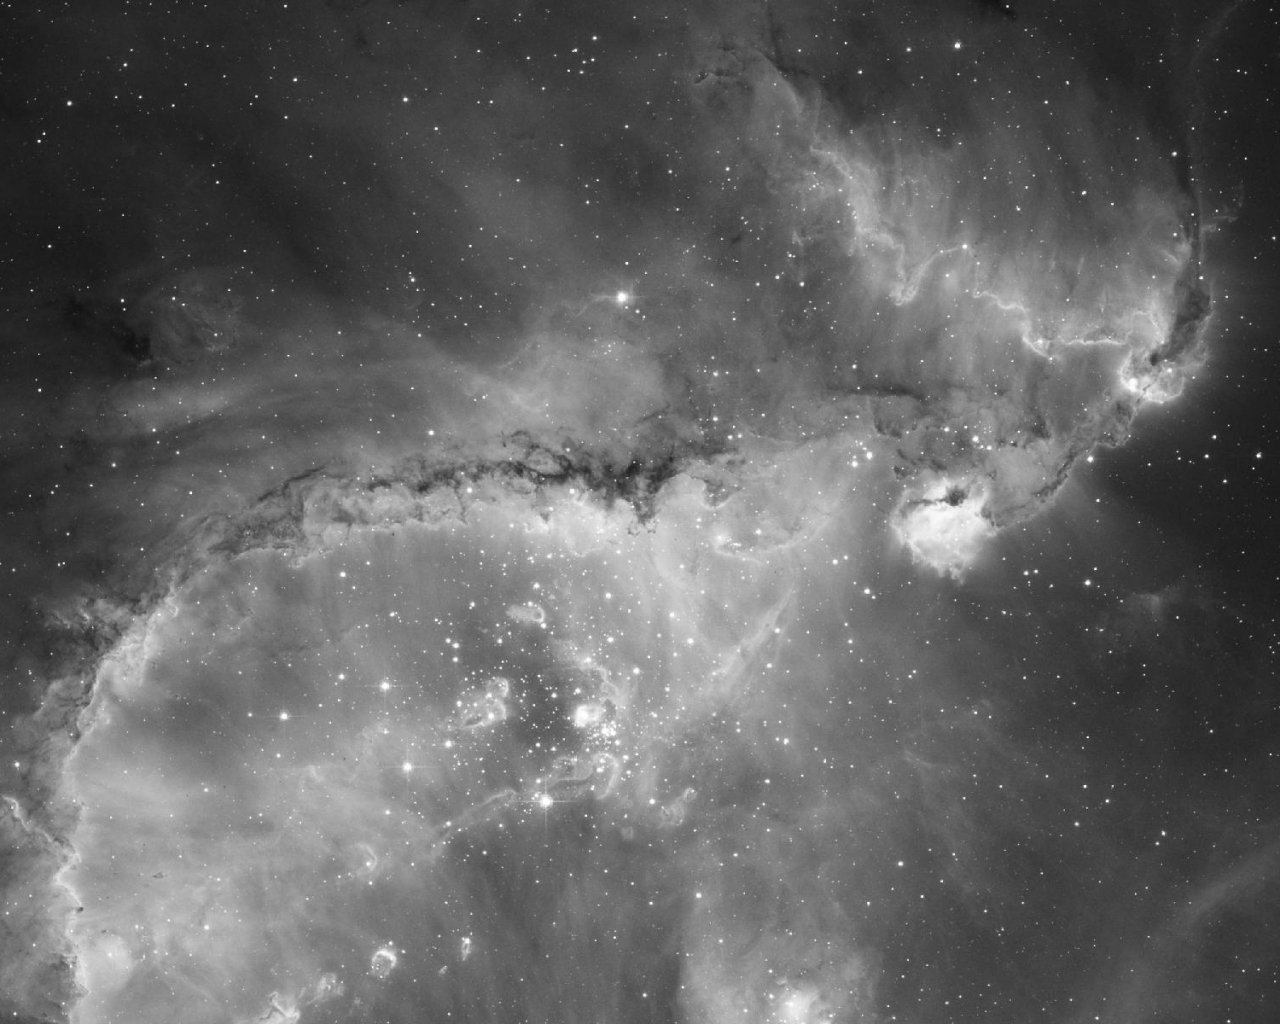 Скопление звезд NGC 346 в соседней галактике, Малом Магеллановом облаке, распространяет сильное излучение, которое воздействует на окружающий газ и заставляет его светиться